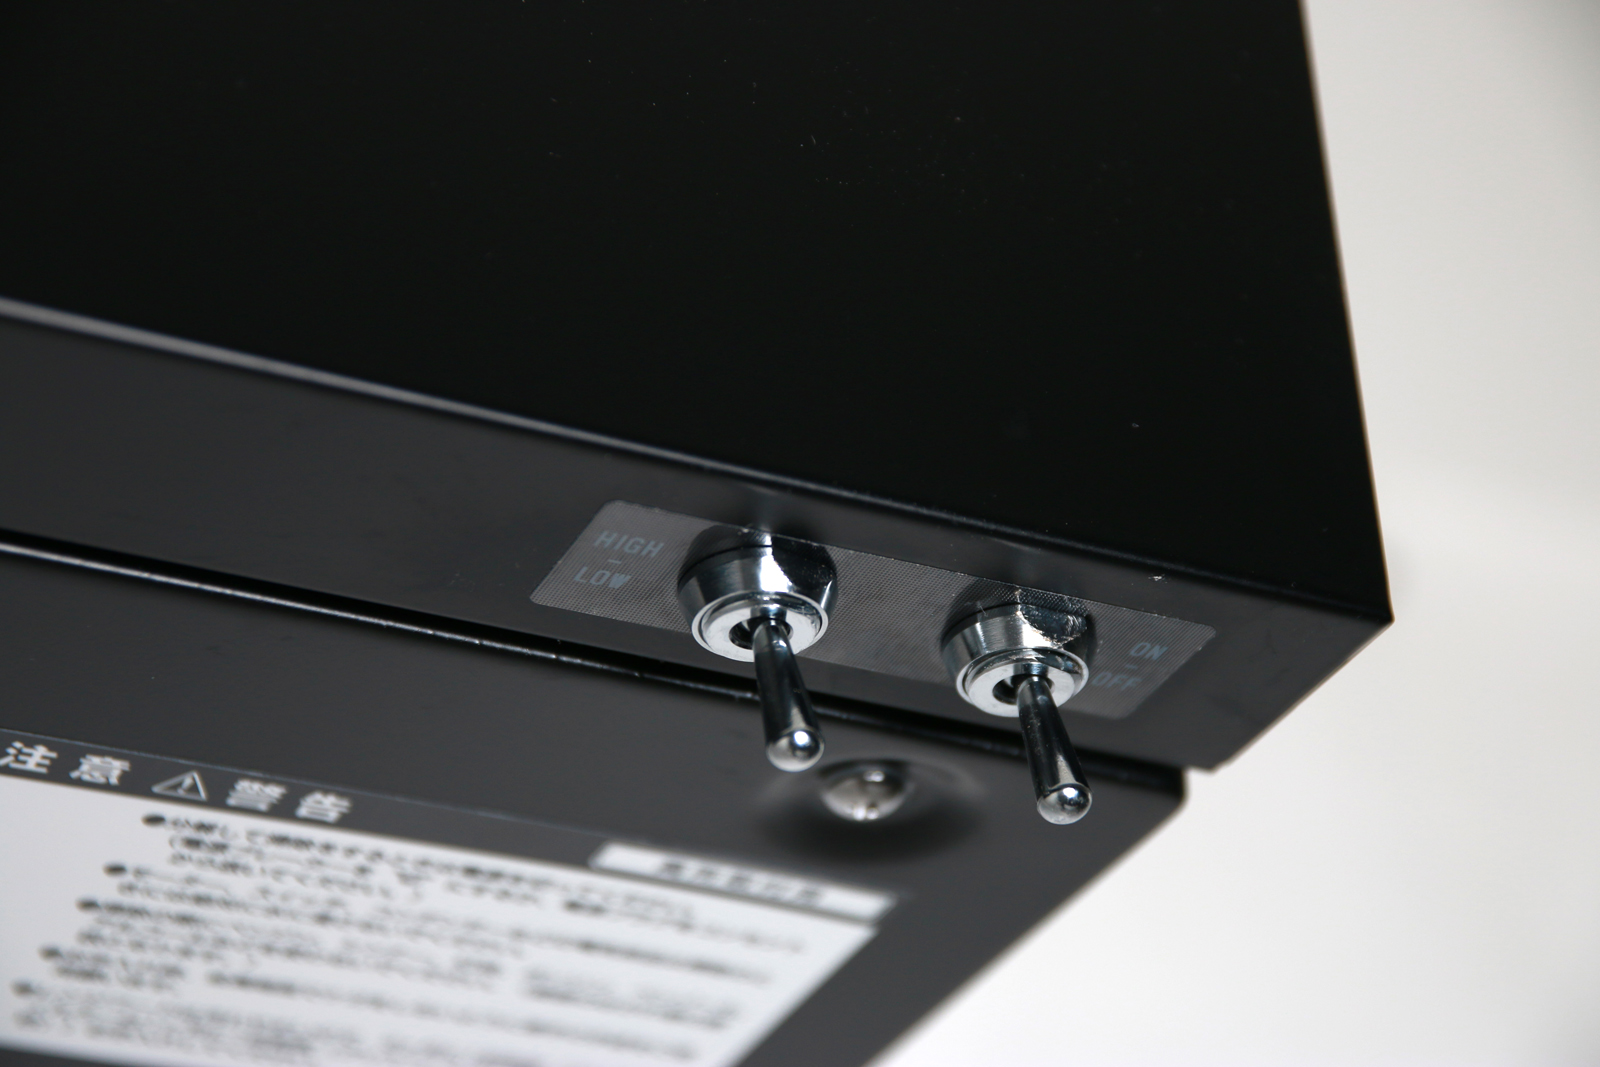 フラットレンジフード 壁付け型 W600 ブラック KB-KC017-02-G141 スイッチは側面をすっきりさせるために底面に付いたトグルスイッチ